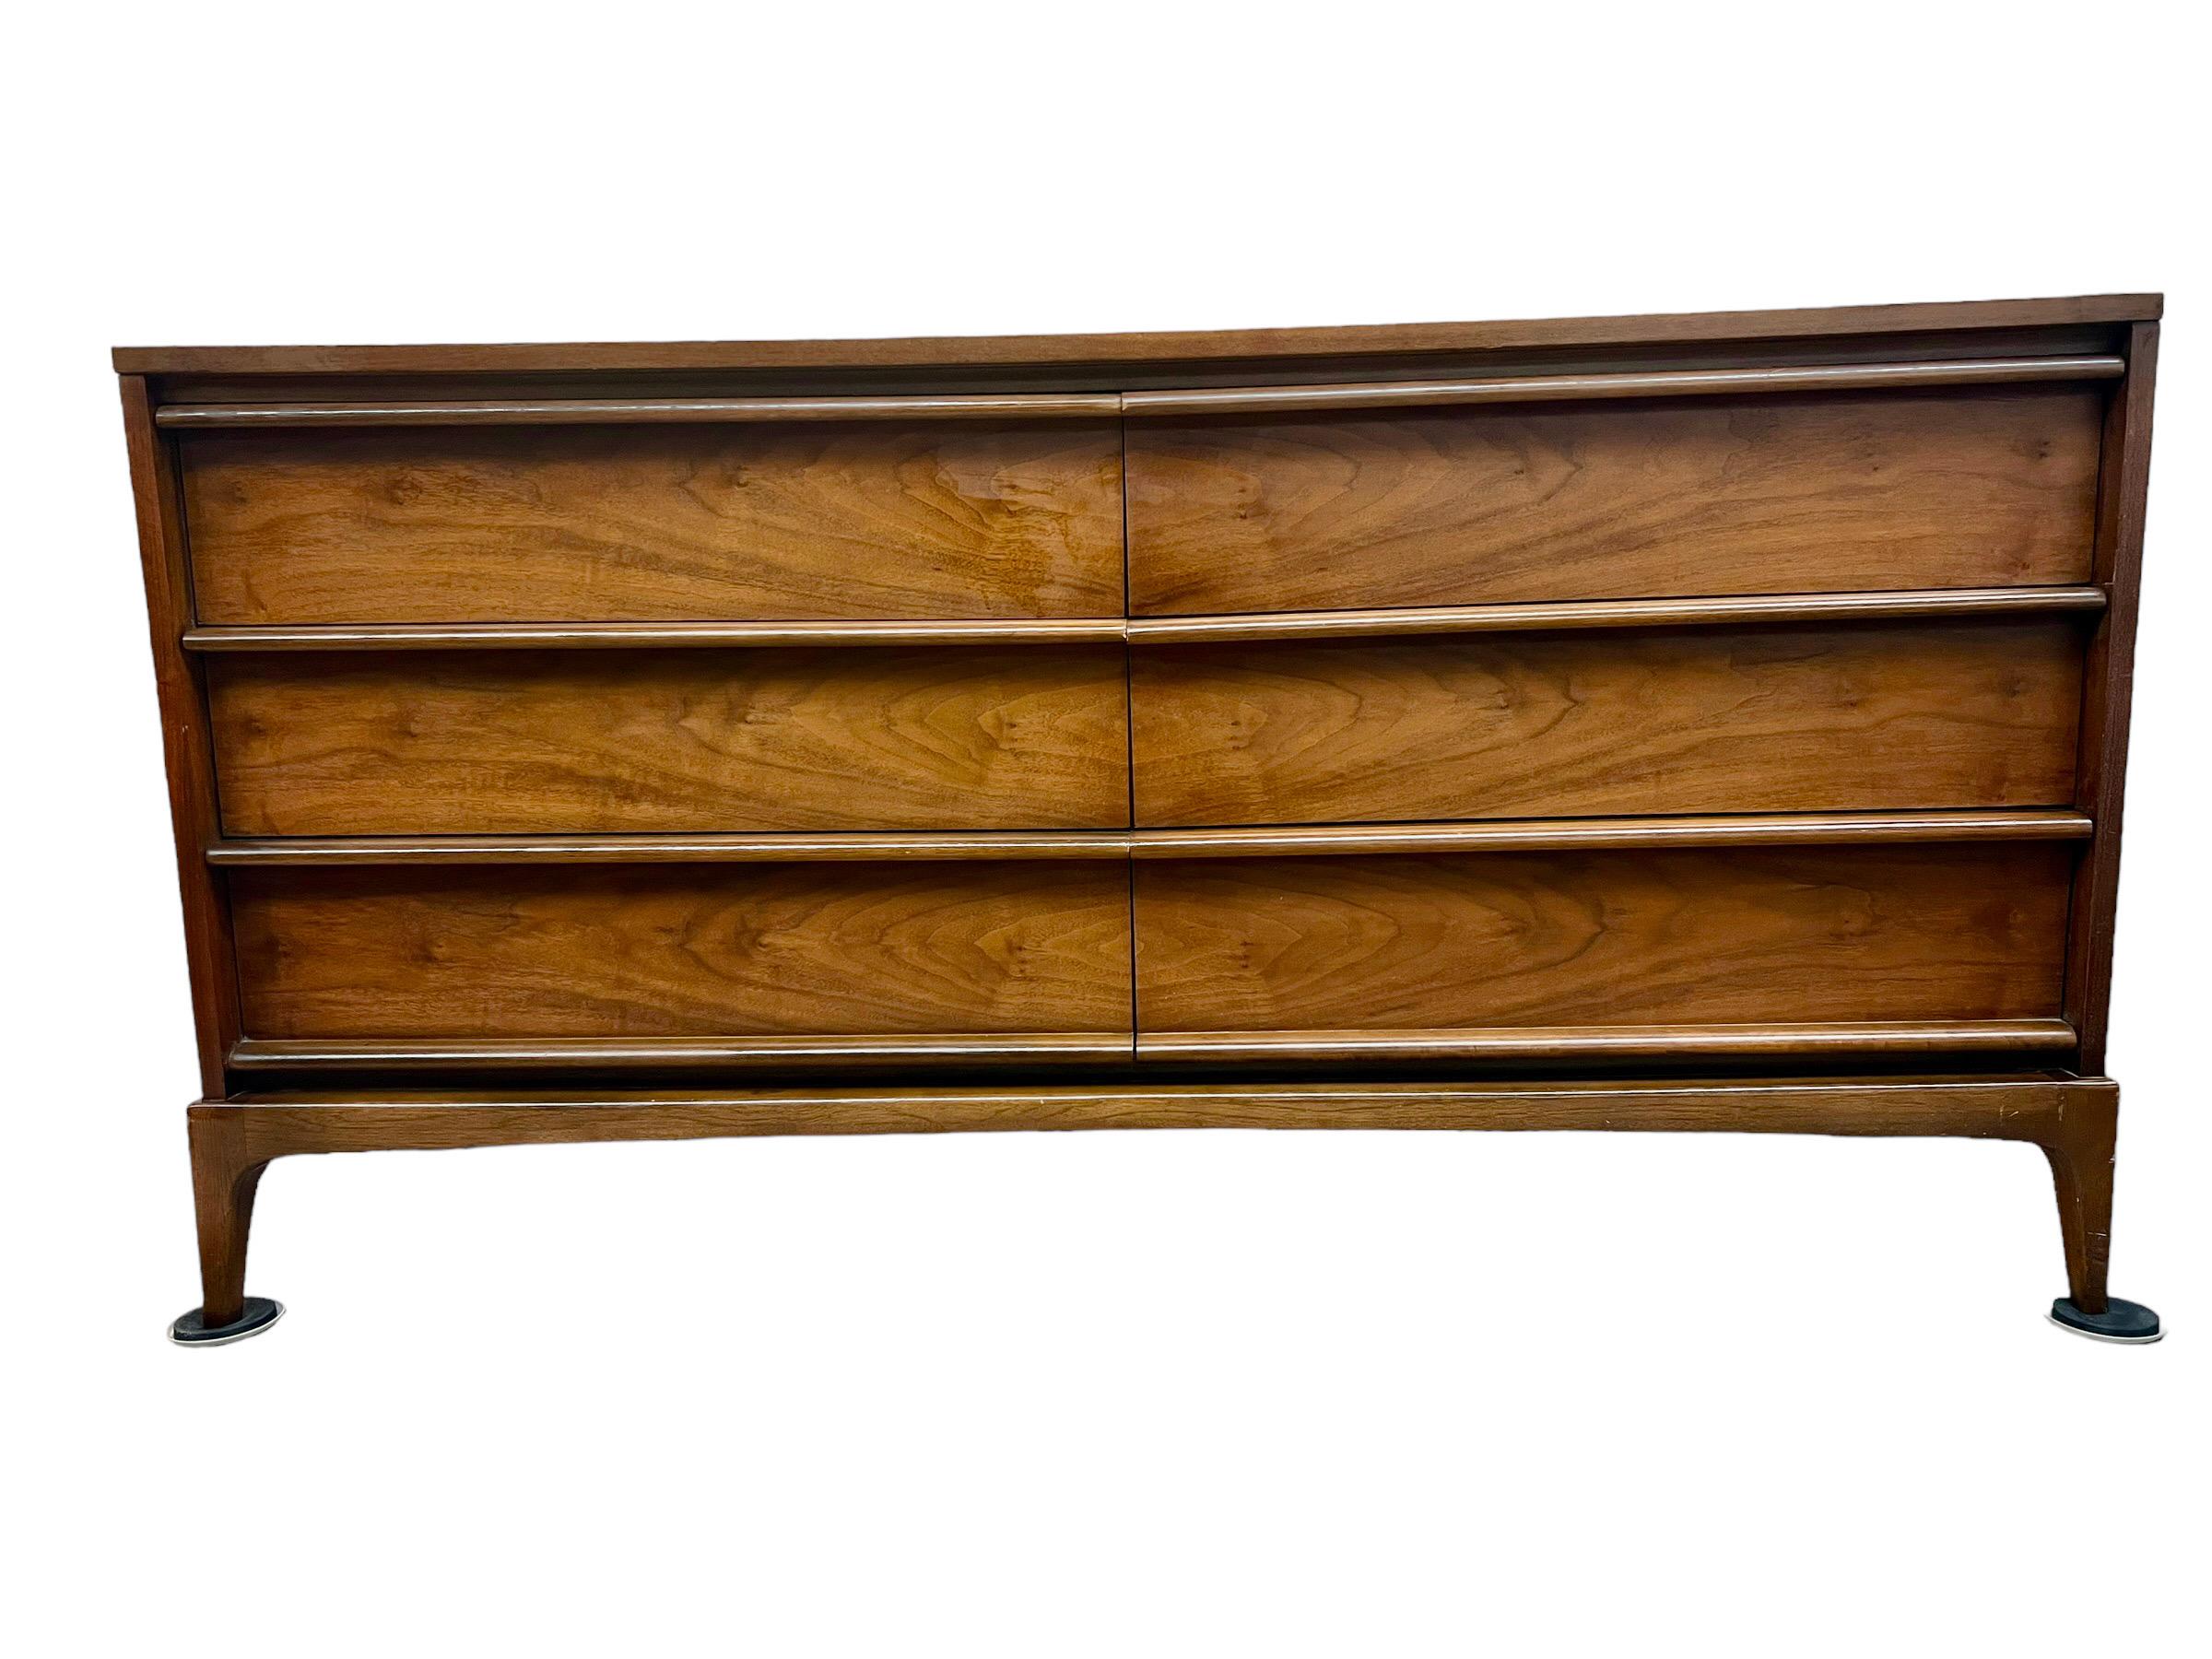 Cette commode Vintage Mid Century Modern Walnut a été fabriquée par Lane. Il s'agit d'un meuble bas à 6 tiroirs offrant un espace de rangement généreux. Les détails du grain de bois sur la façade du tiroir sont impressionnants. Ce meuble est doté